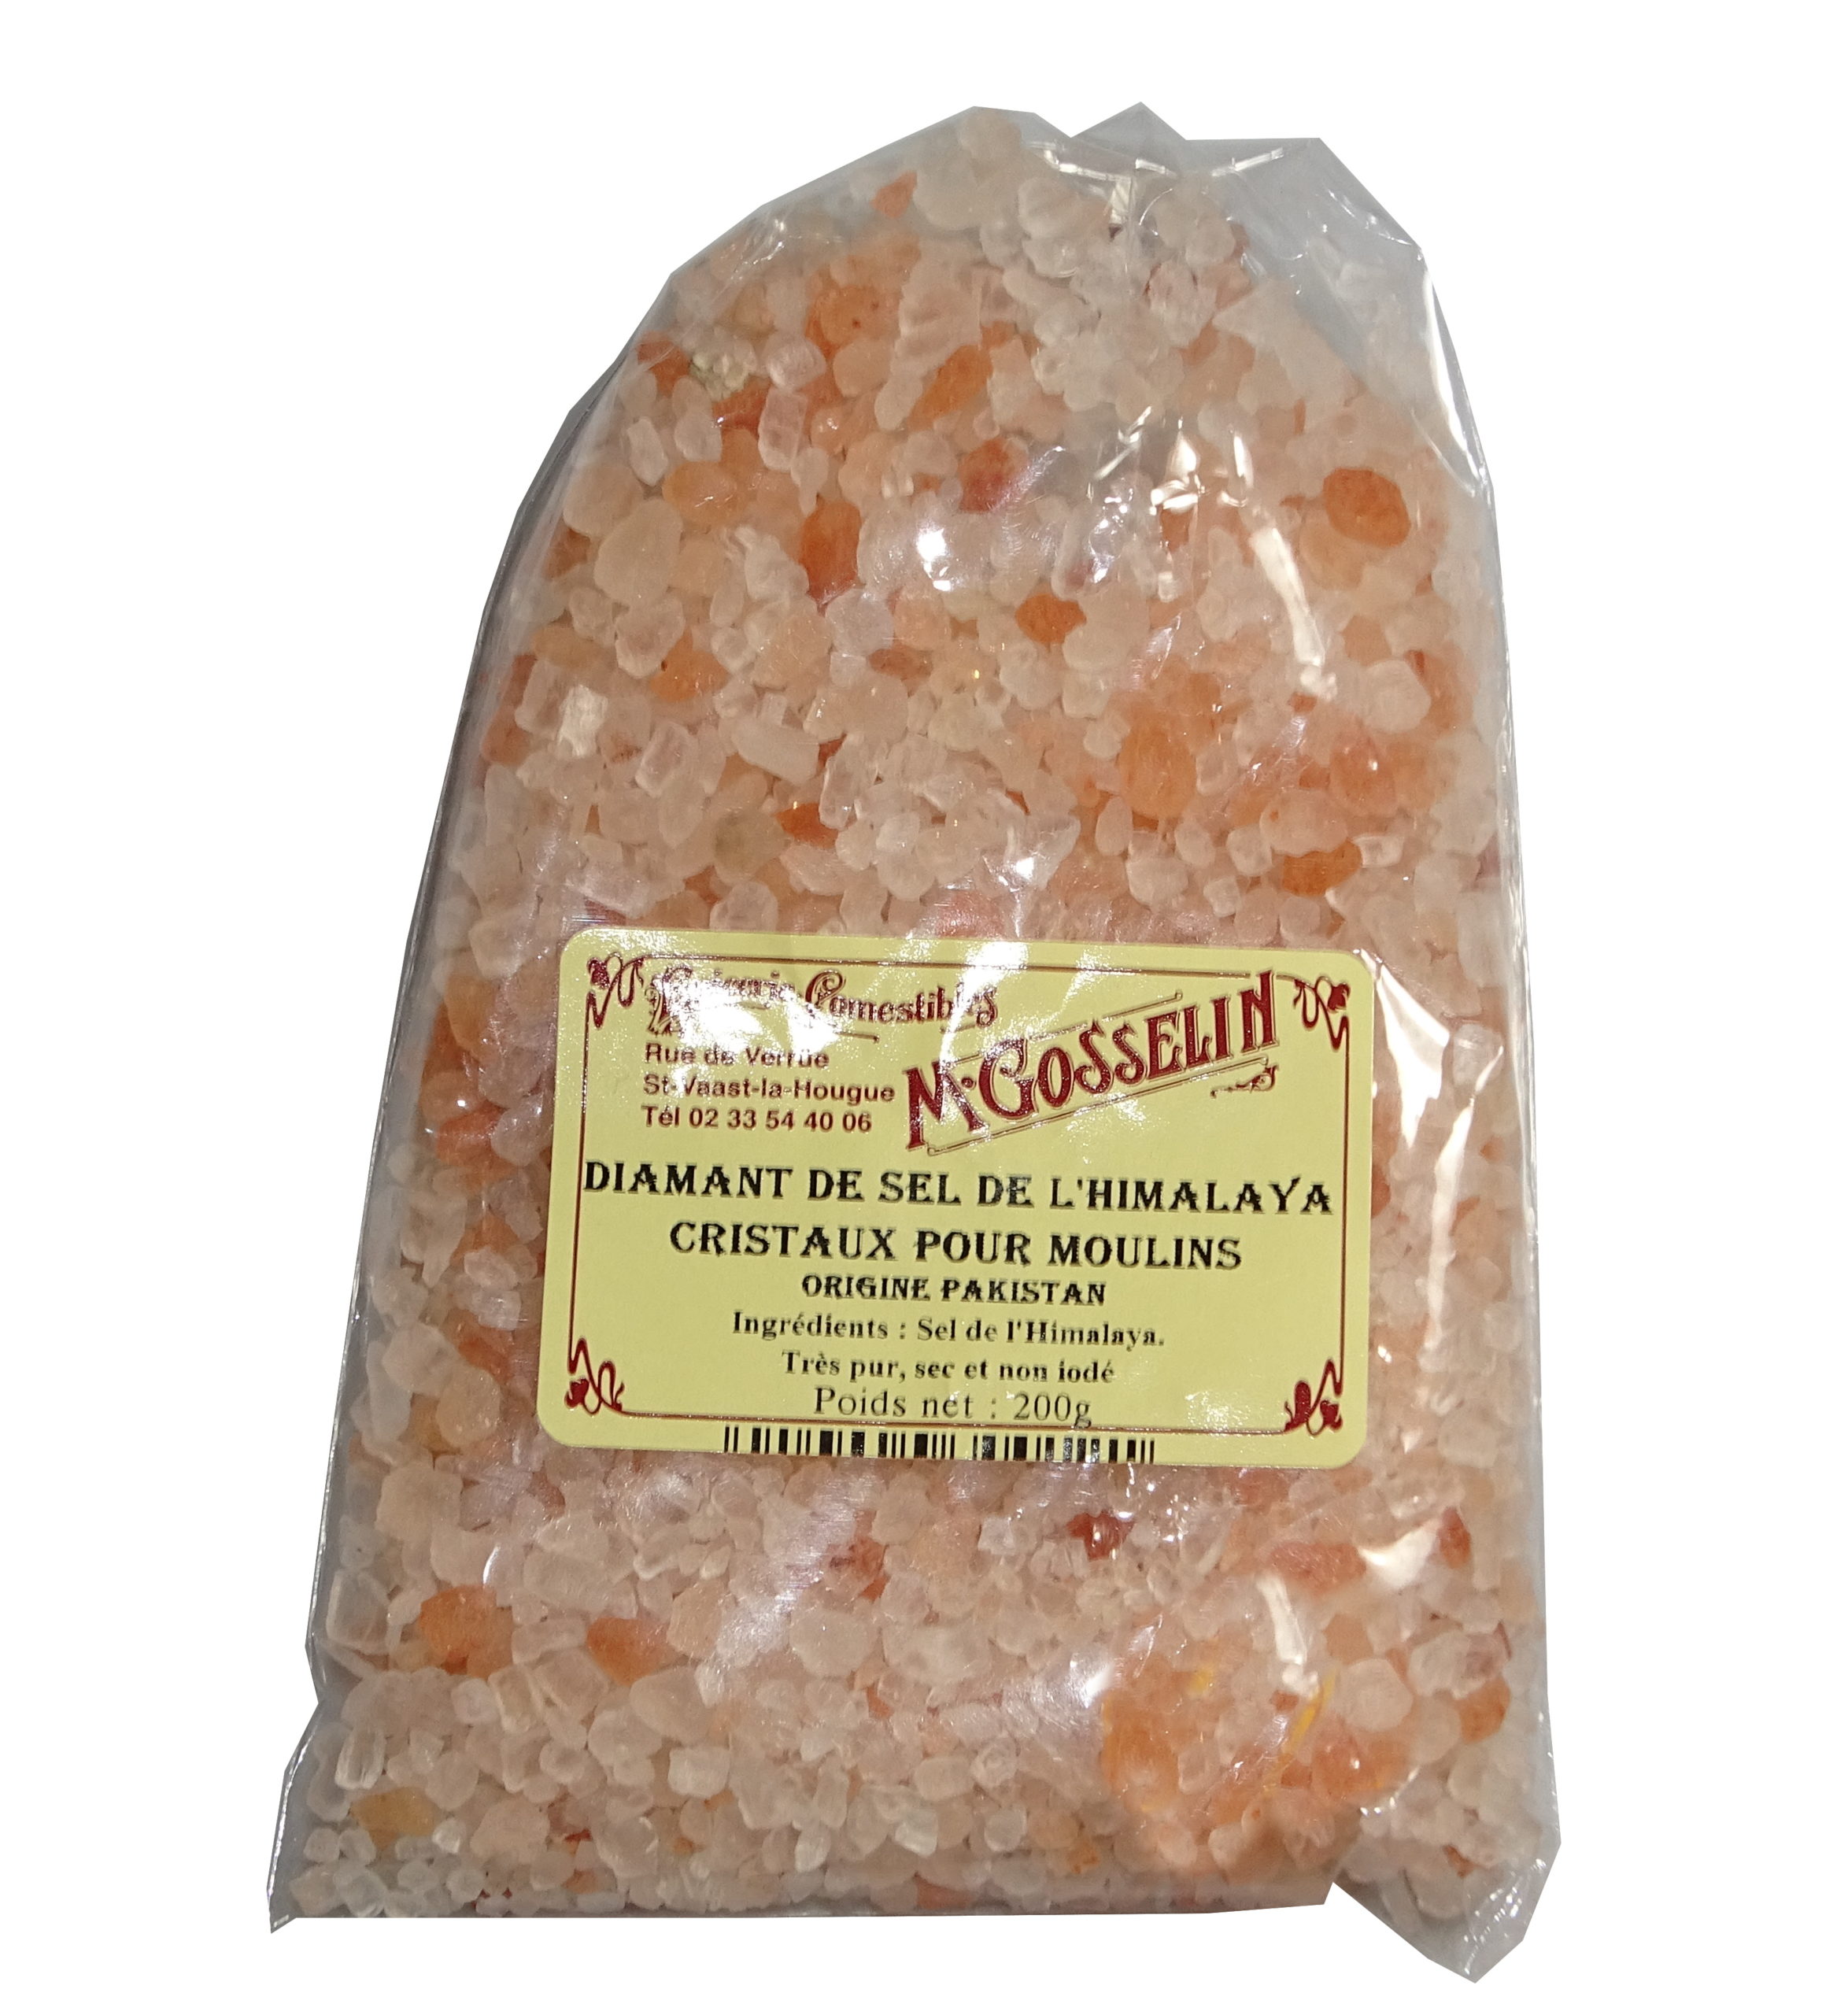 Diamant de sel de l'Himalaya (cristaux pour moulin) - Maison Gosselin